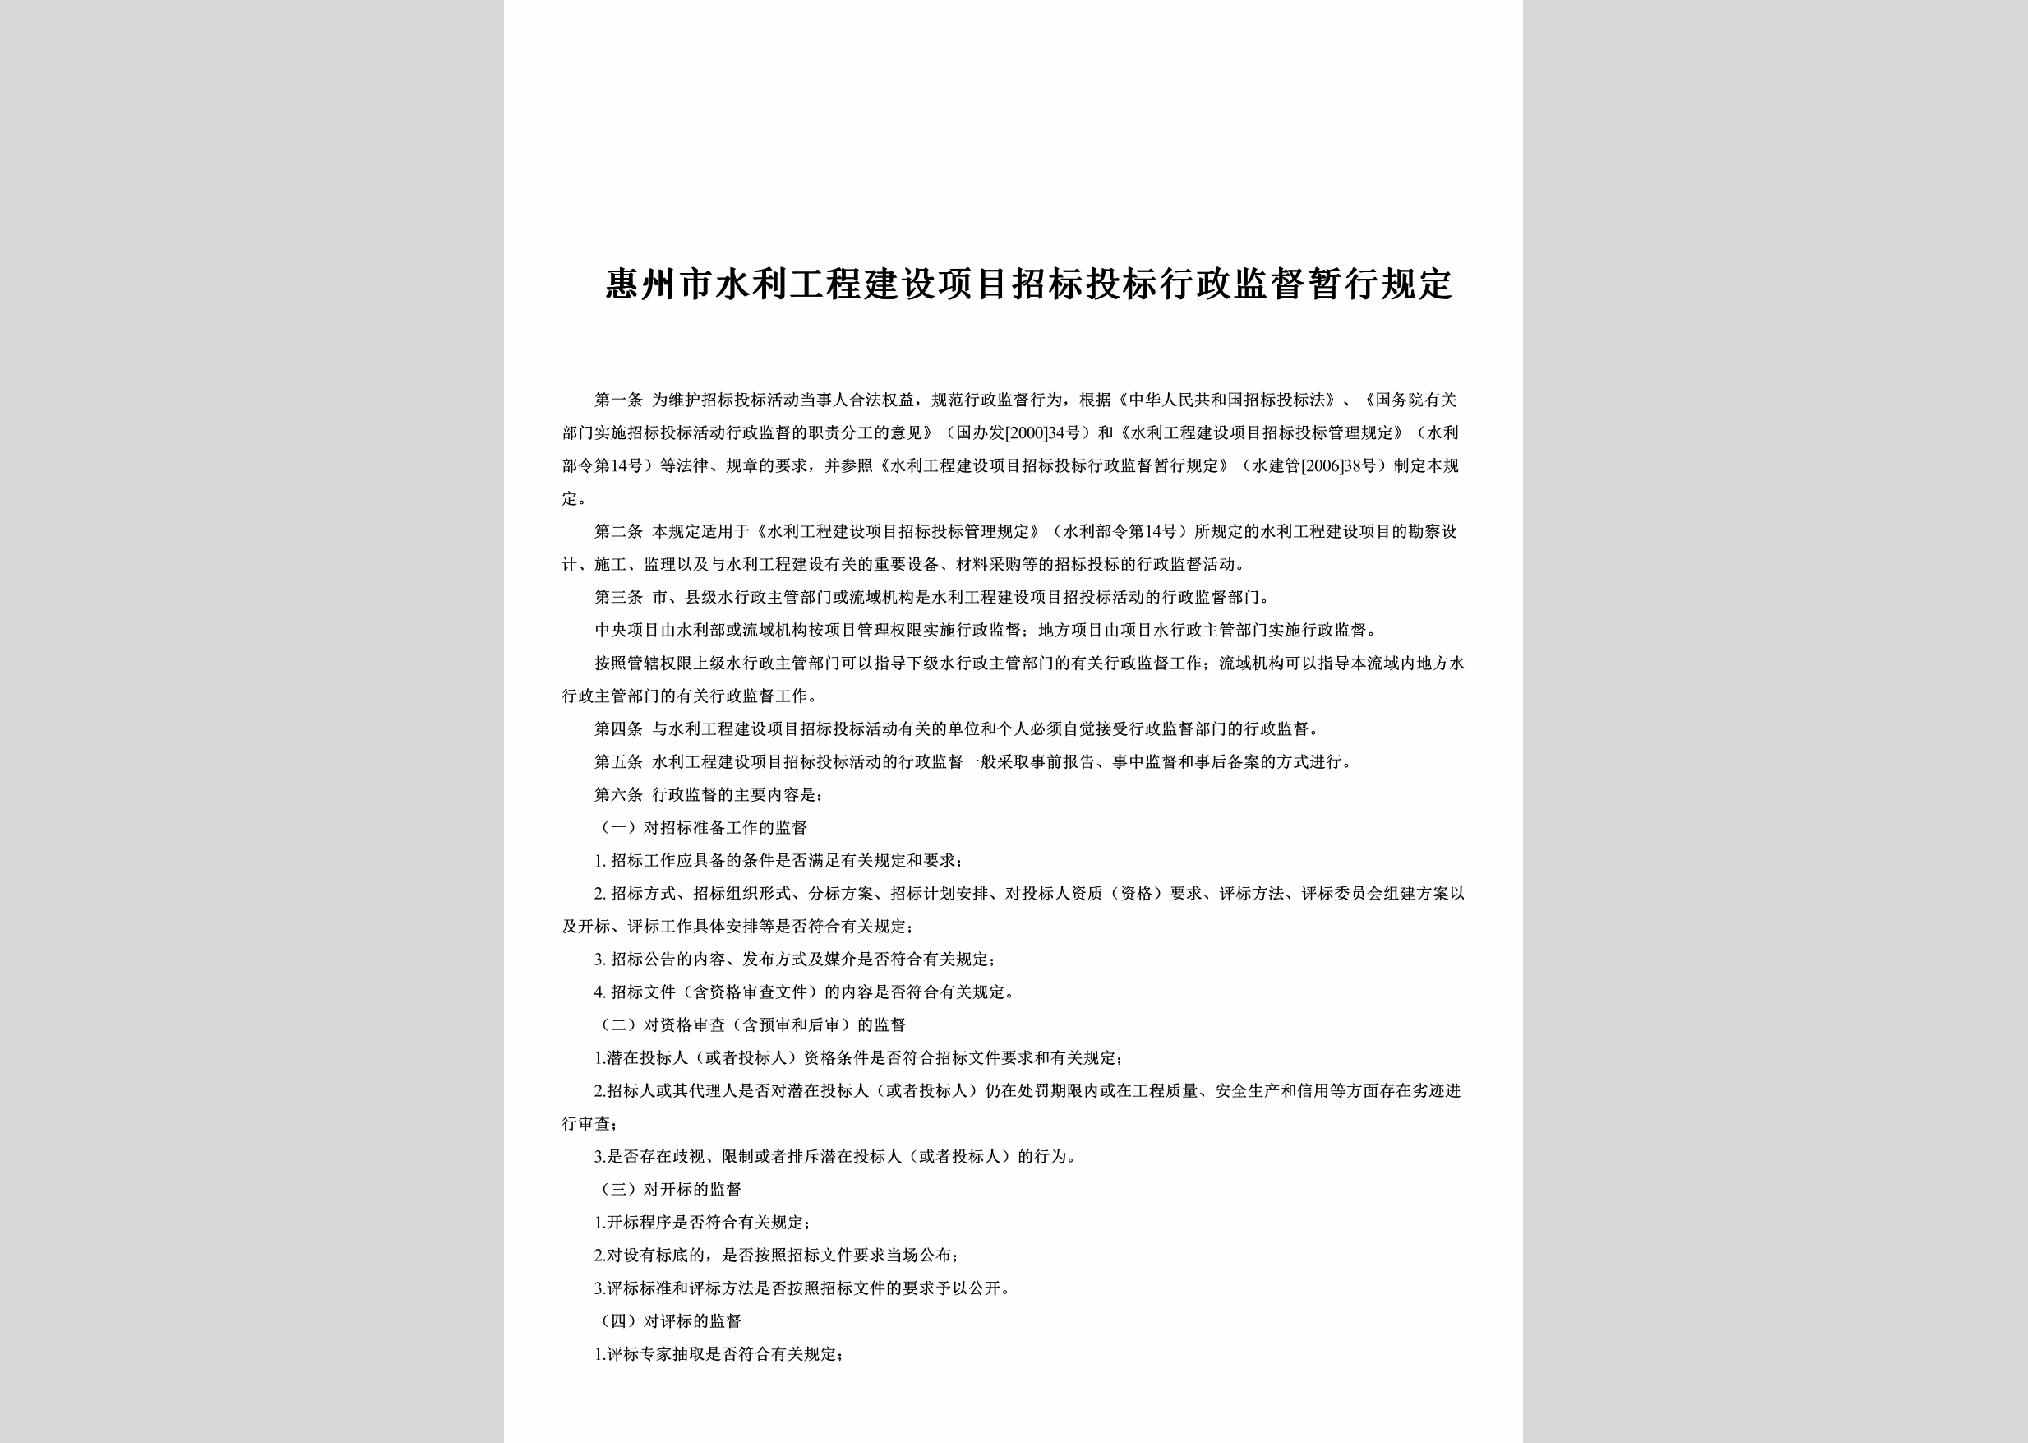 GD-HZSSLGCJ-2006：惠州市水利工程建设项目招标投标行政监督暂行规定